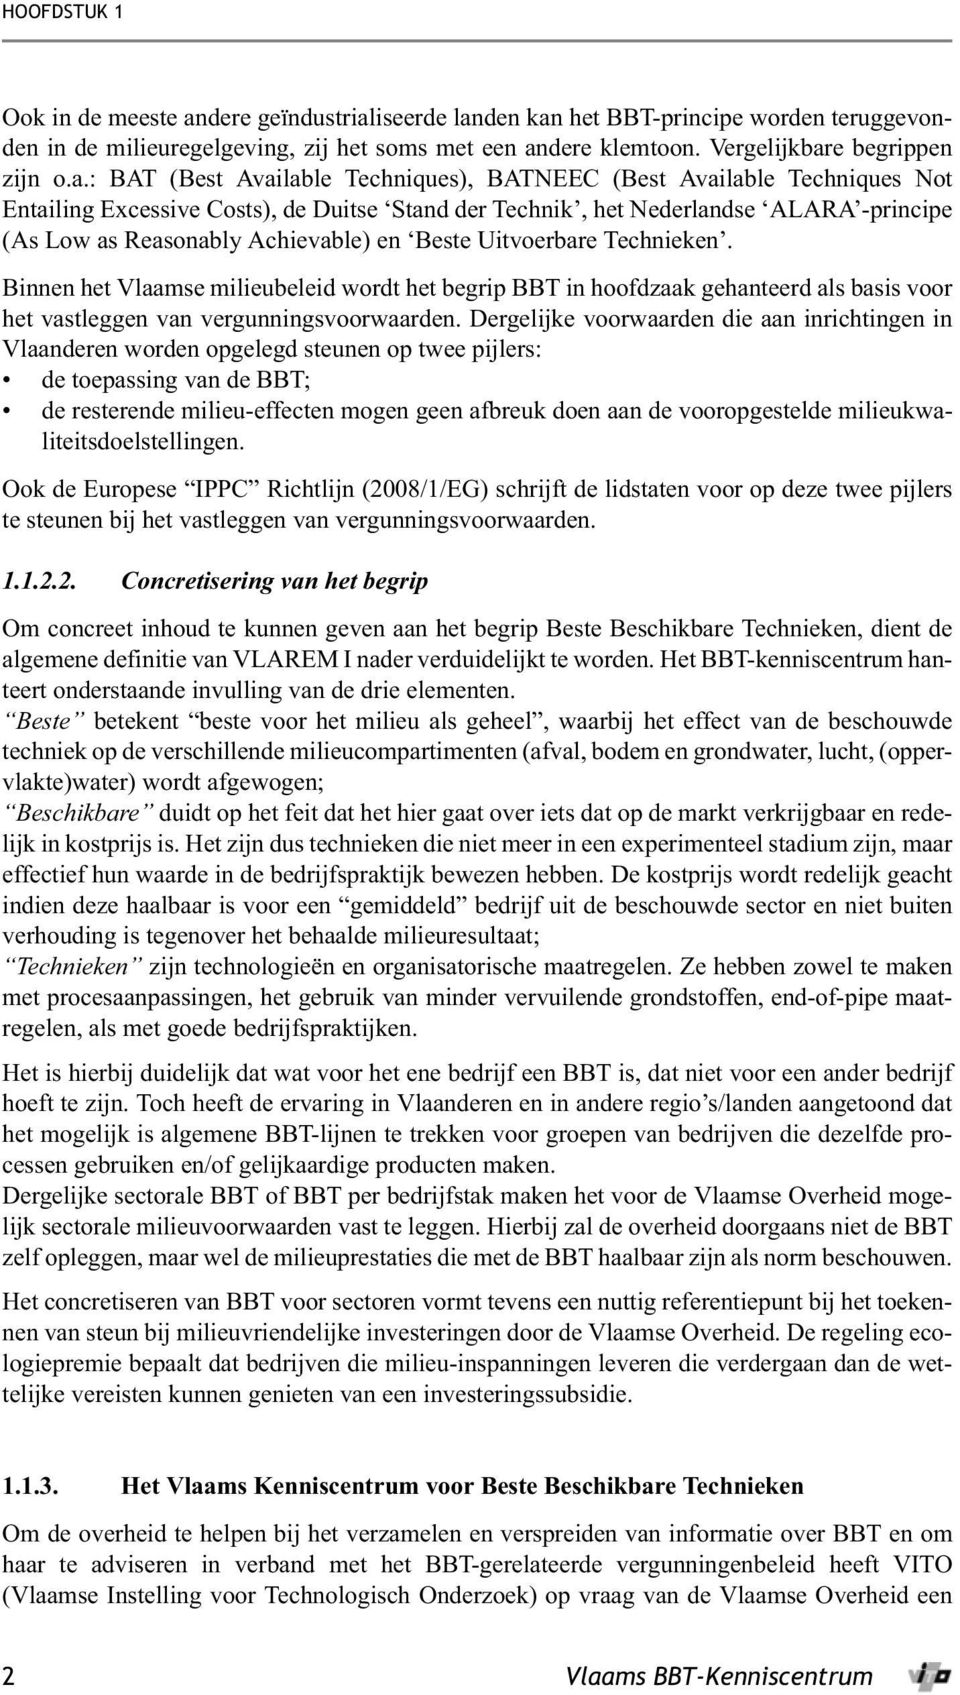 en Beste Uitvoerbare Technieken. Binnen het Vlaamse milieubeleid wordt het begrip BBT in hoofdzaak gehanteerd als basis voor het vastleggen van vergunningsvoorwaarden.